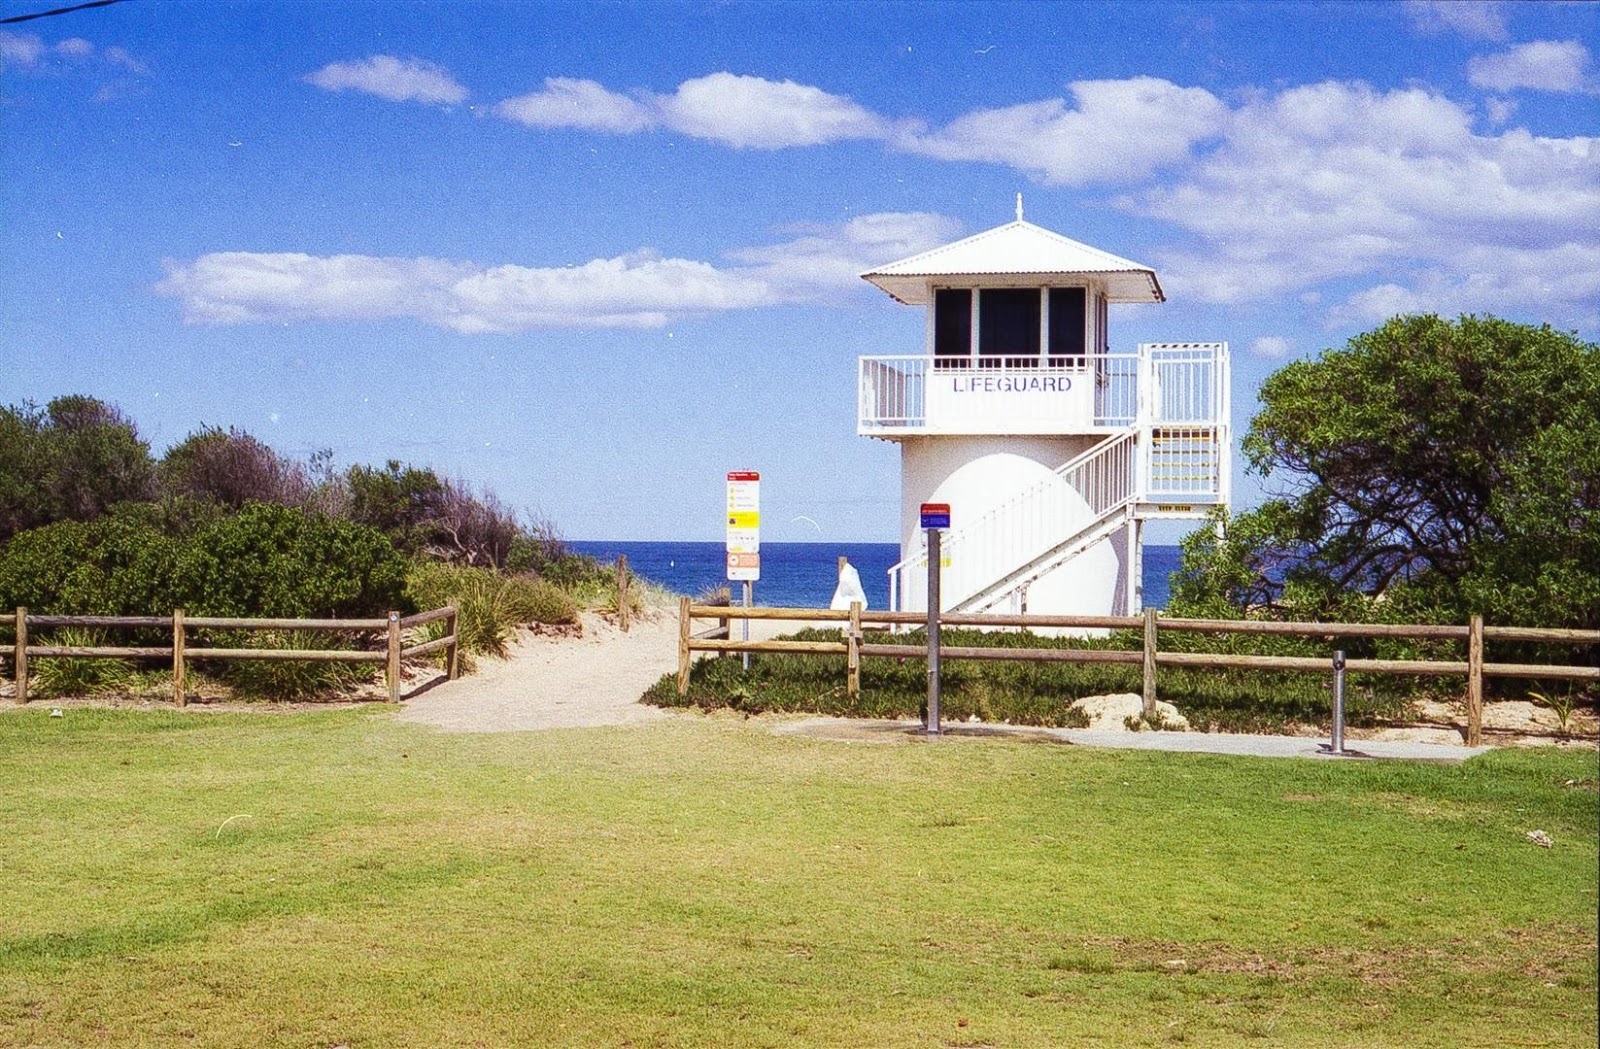 Photo de Fairy Meadow Beach - endroit populaire parmi les connaisseurs de la détente